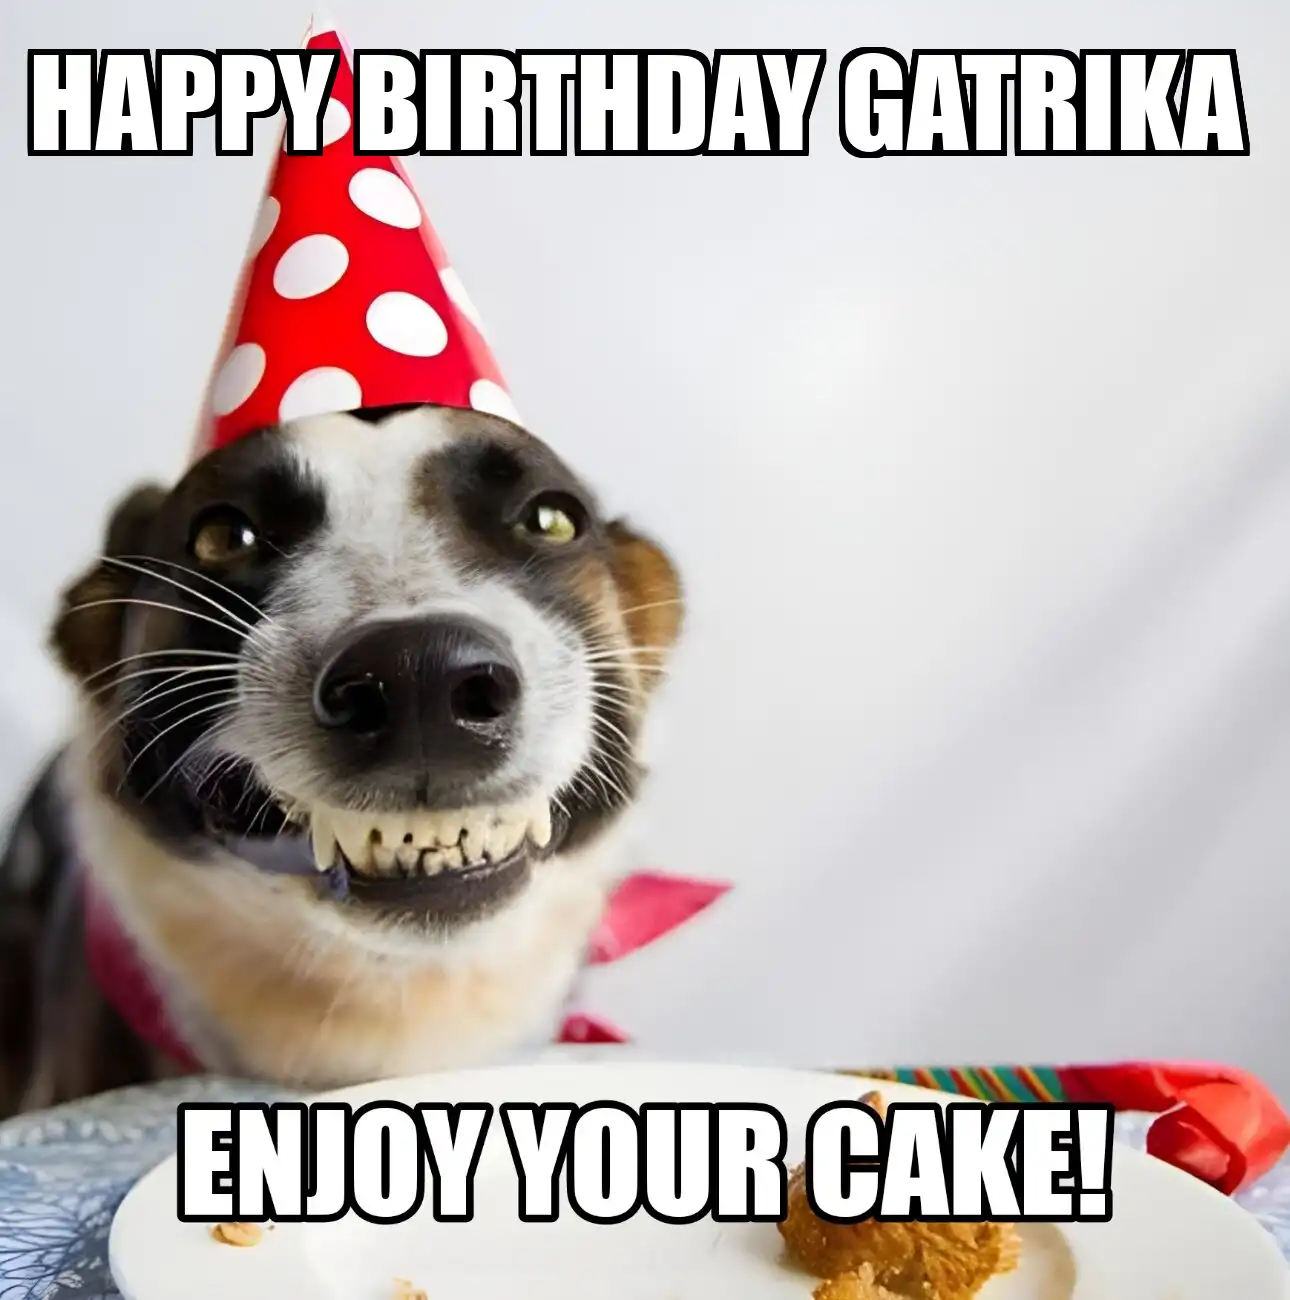 Happy Birthday Gatrika Enjoy Your Cake Dog Meme